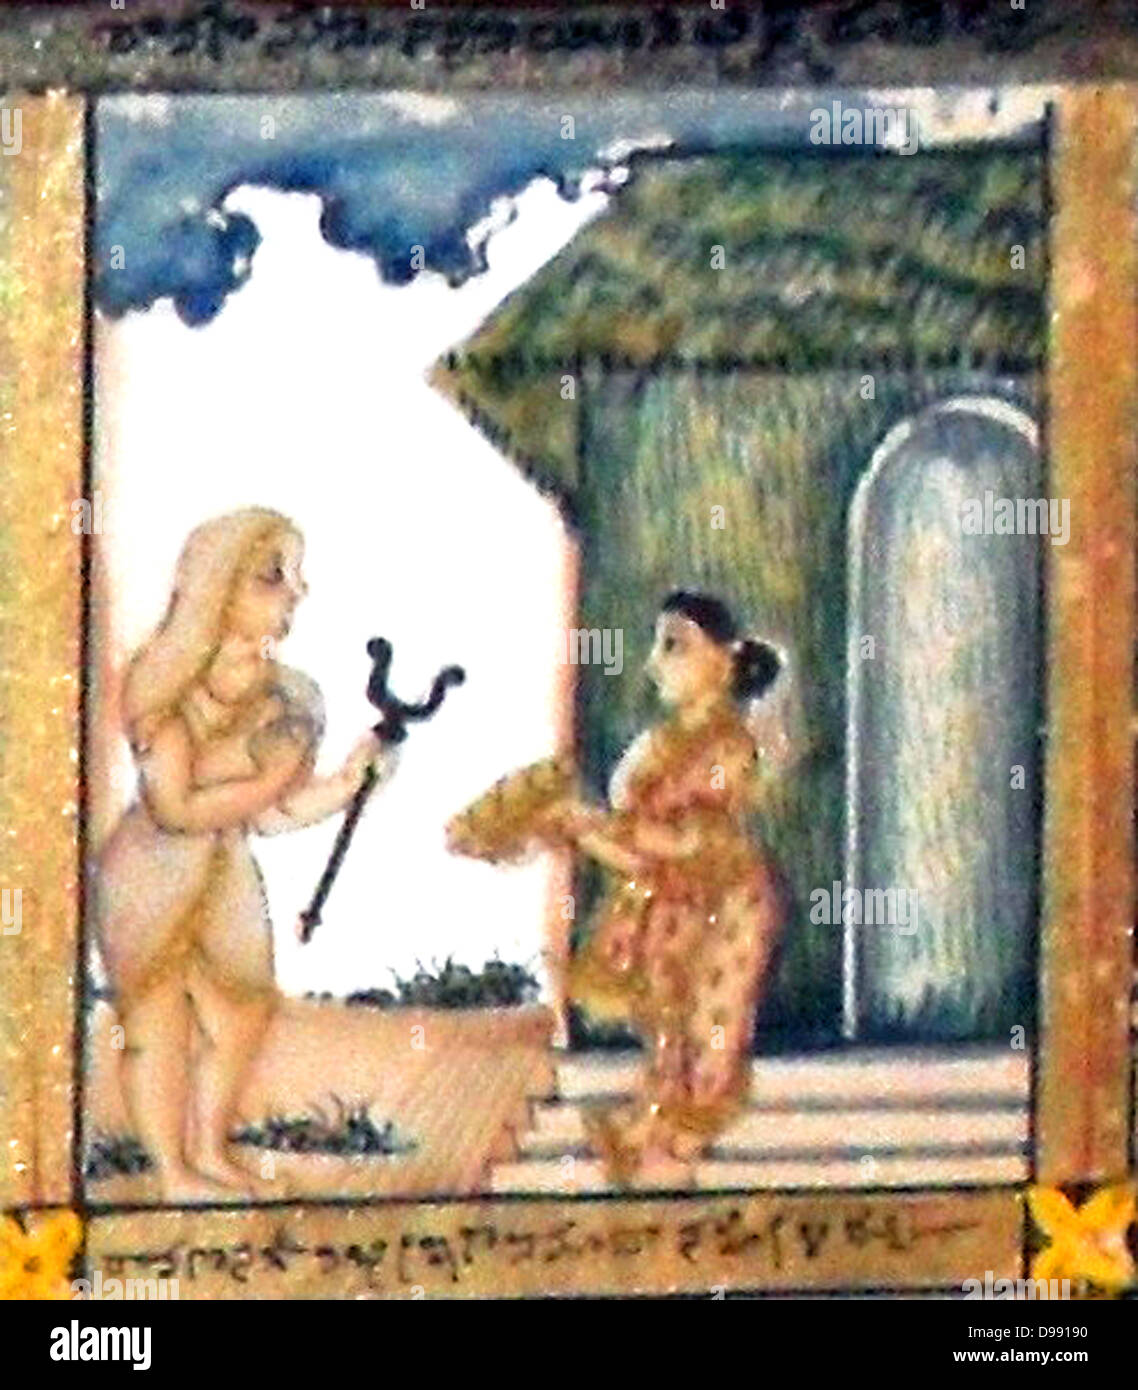 Aus dem 19. Jahrhundert Email und glasierte Bild, der hinduistische Legende des Ramayana Detail. Das Ramayana ist einer der zwei epische Hindu Gedichte, das andere ist das Mahabharata. Die Ramayana beschreibt eine Liebesgeschichte zwischen Rama, der alte König, und Sita, der von RAVAN, der König von Ceylon erfasst wird. Rama legt Belagerung nach Ceylon und Gewinne, die Sita Stockfoto